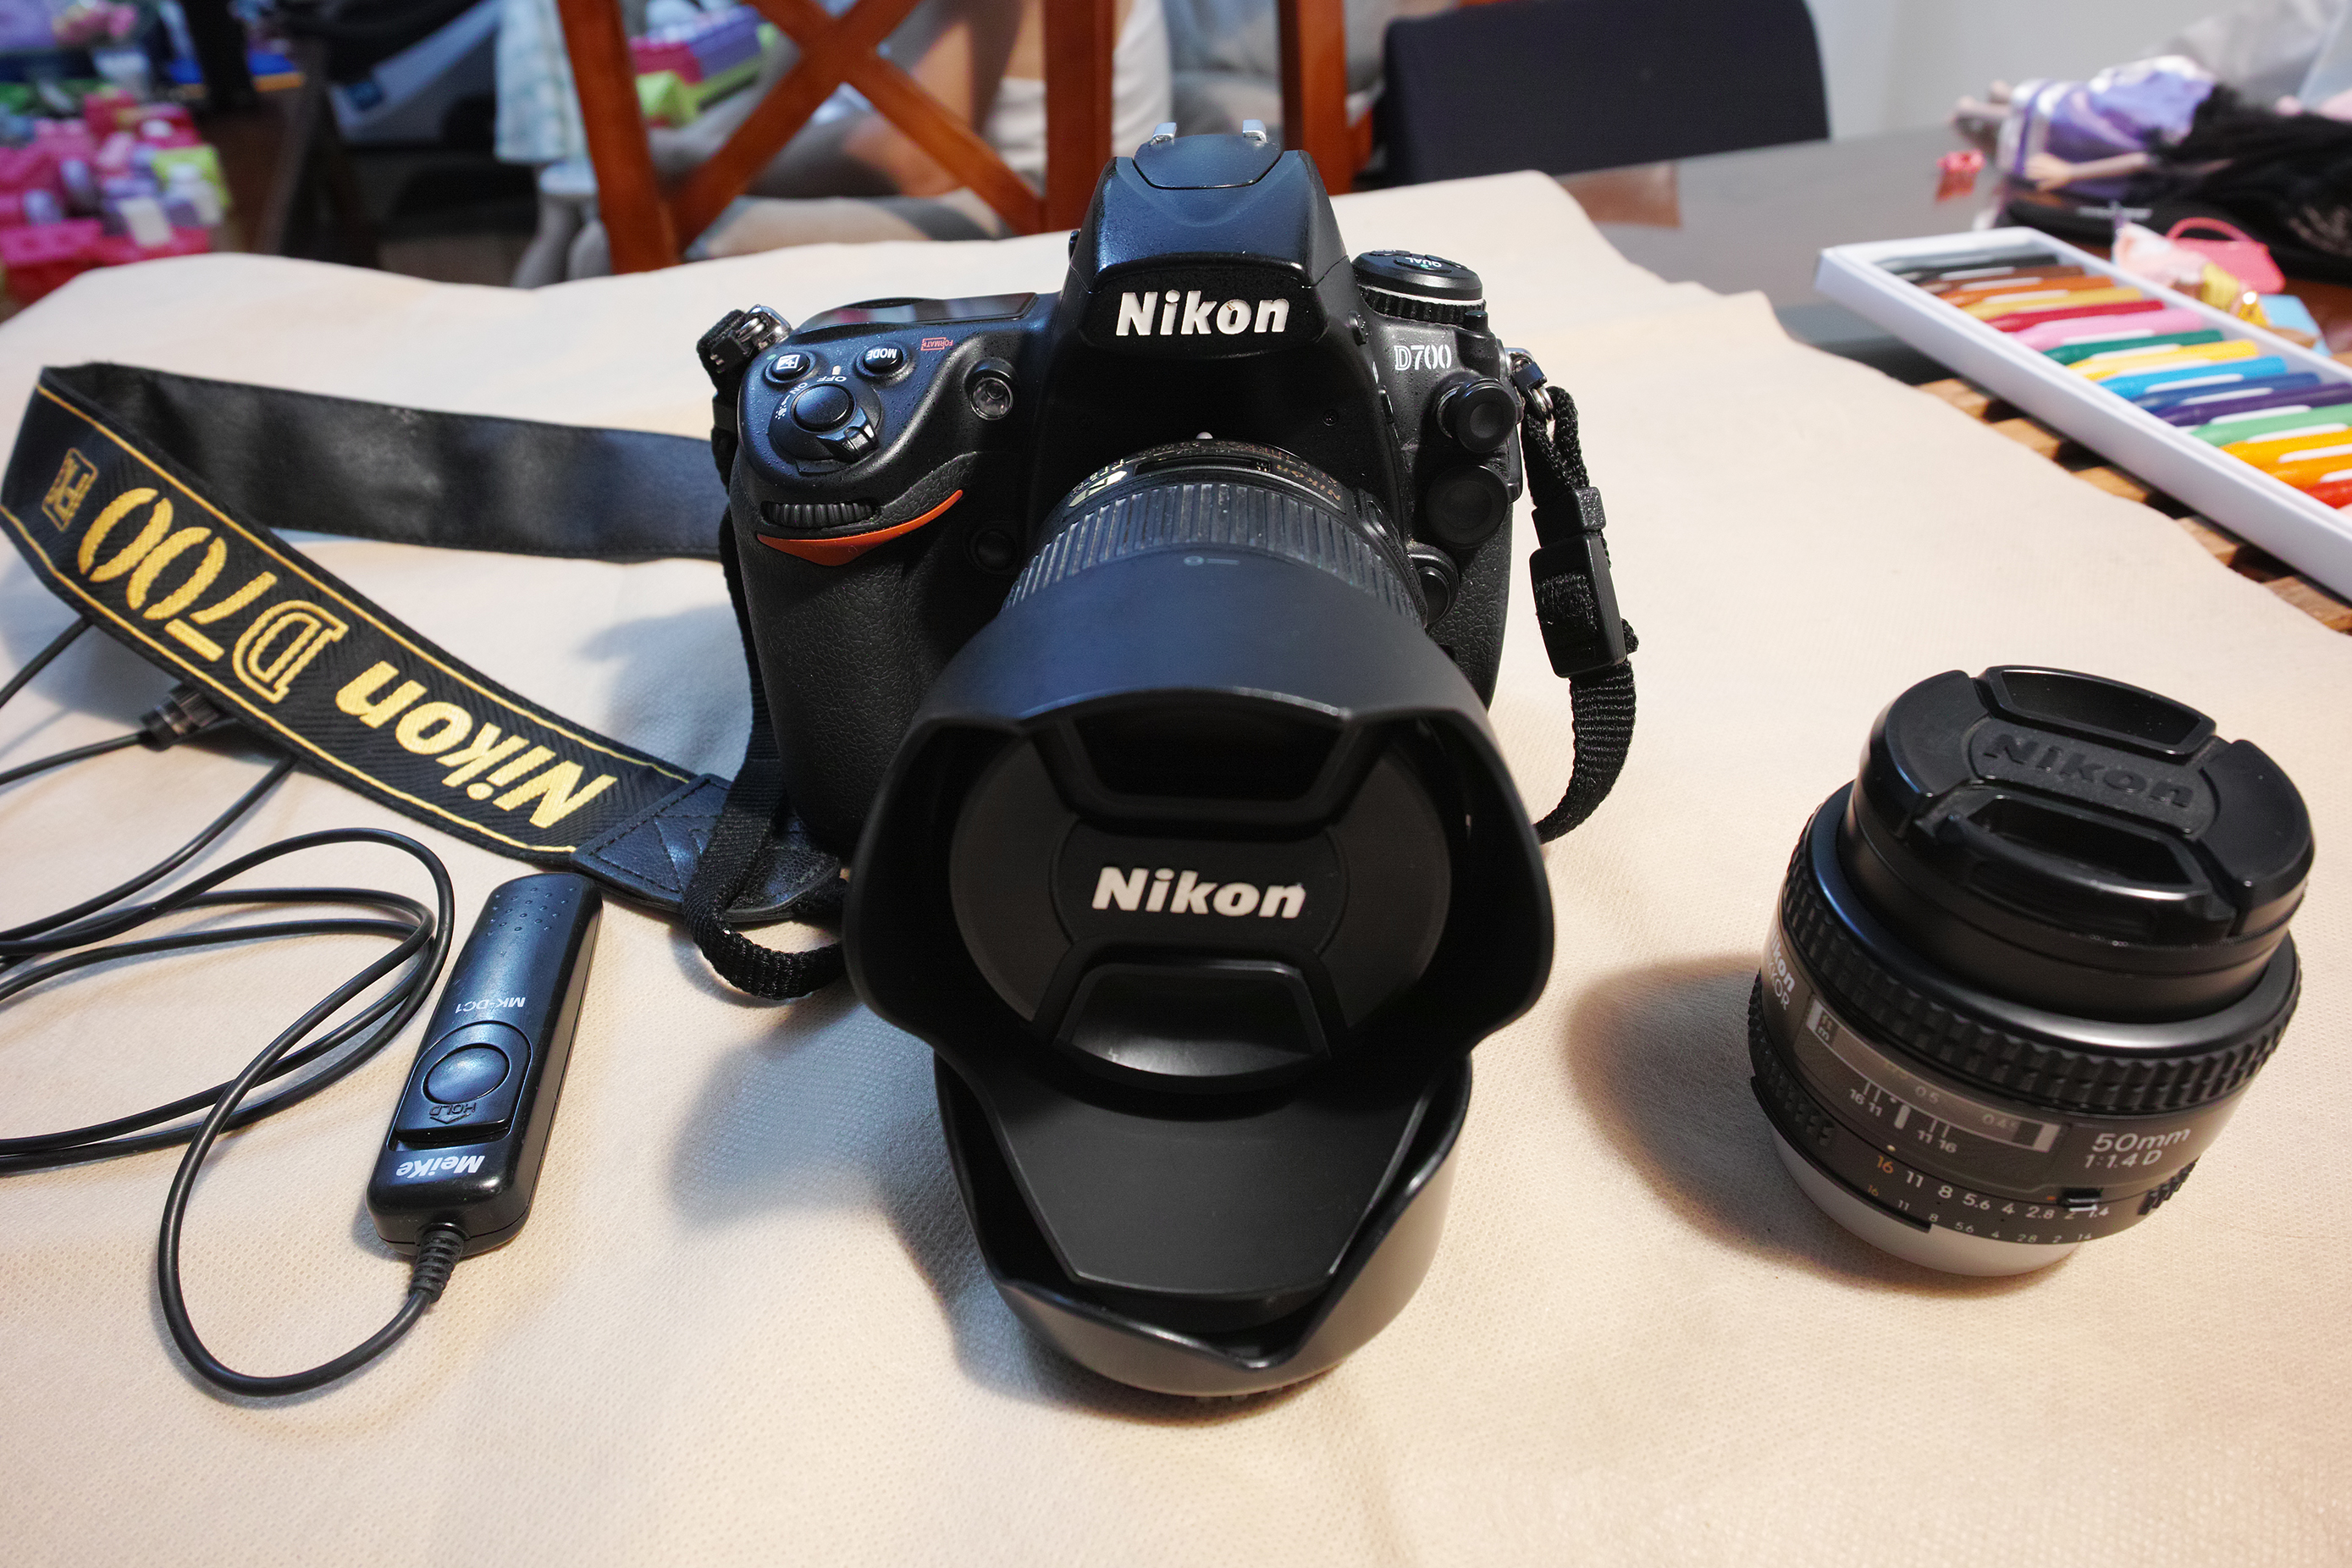  Nikon D700/28mm f 1.8G/50mm f 1.4d